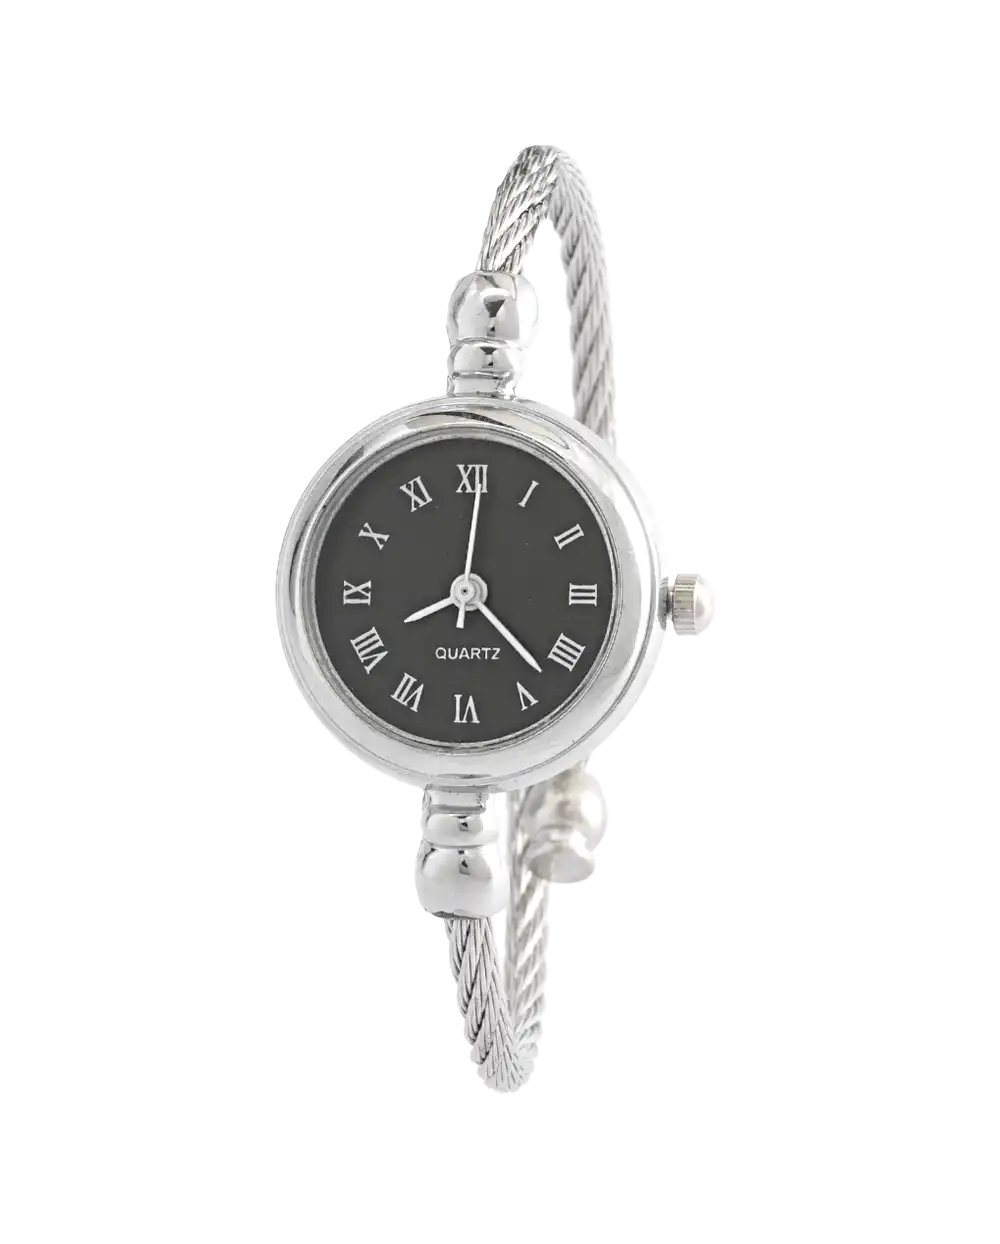 خرید ساعت مچی زنانه جینوا GENEVA طرح بنگل مدل 1787 بند النگویی و ظریف مناسب برای دختران و خانم ها به همراه جعبه ی ساعت و ارسال رایگان